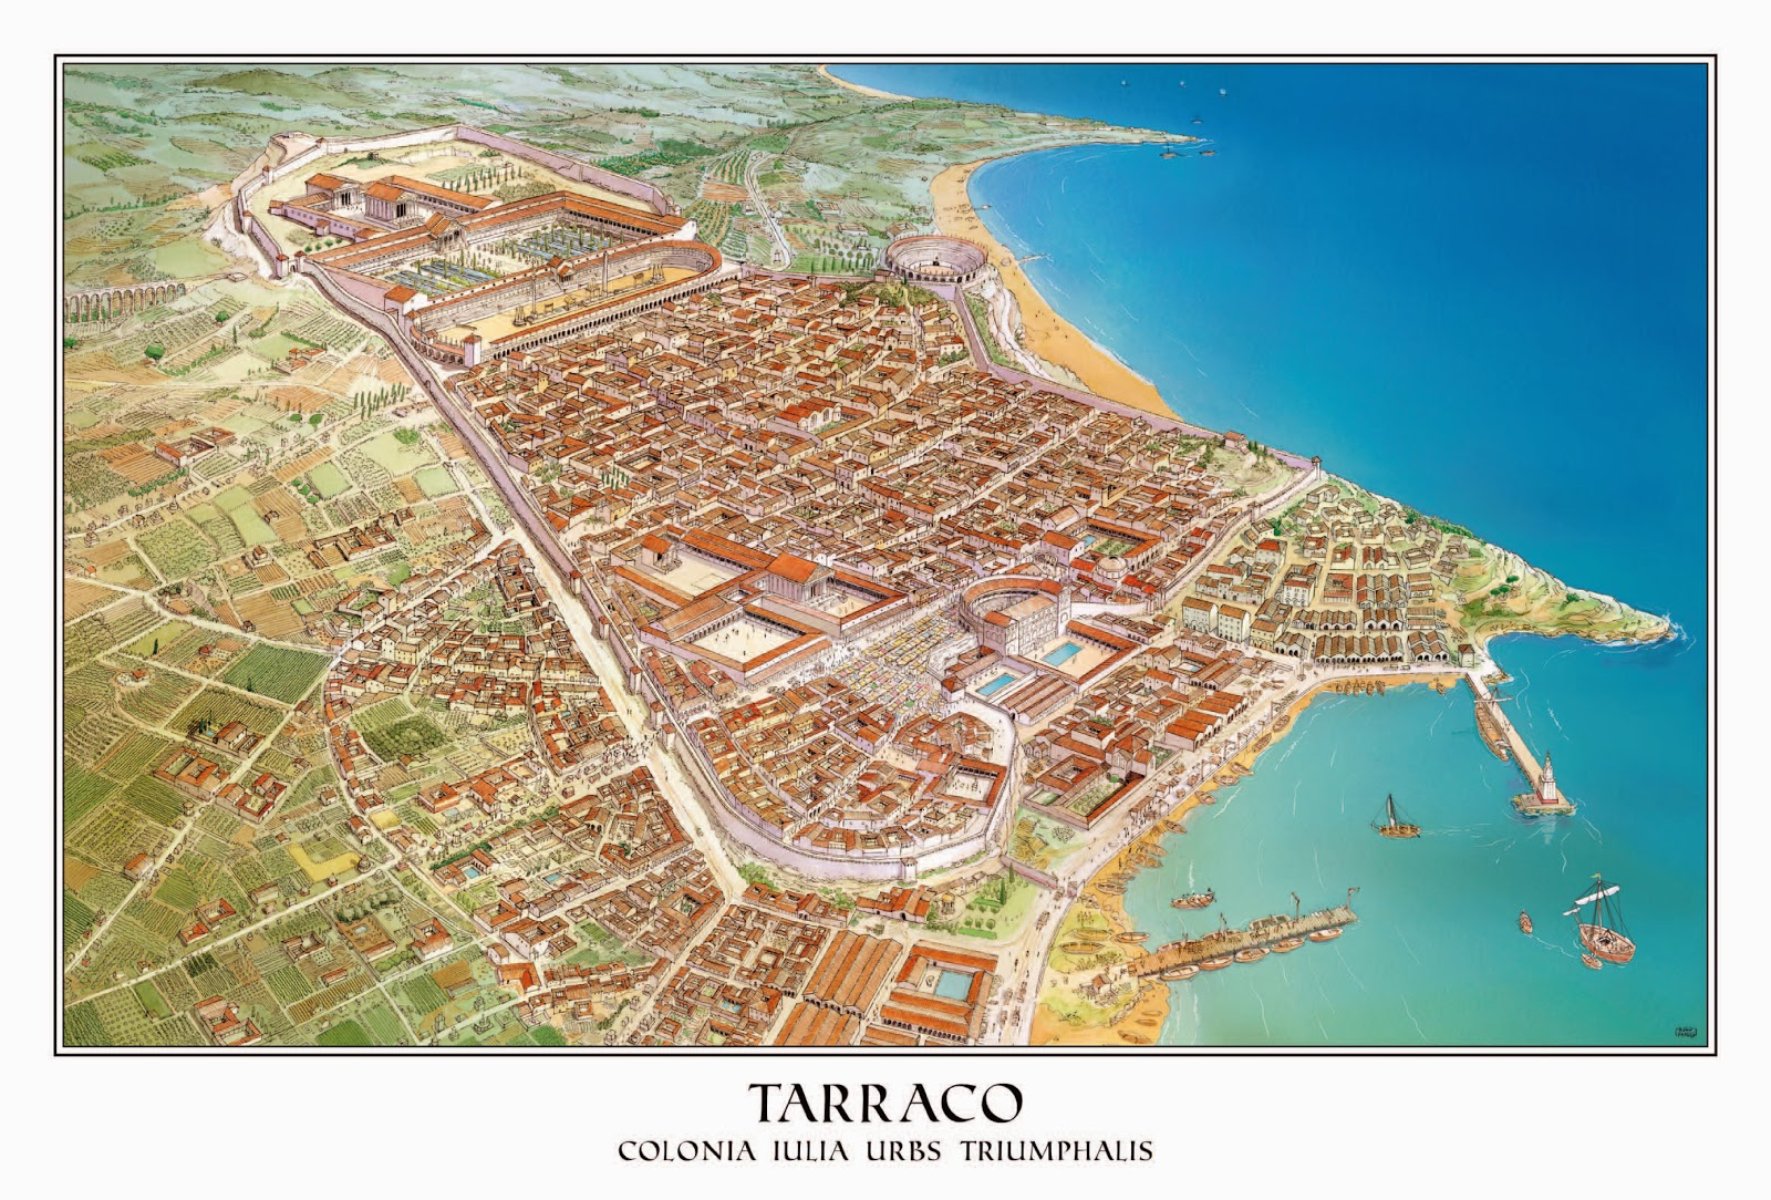 Avito, el candidato de las élites de la Tarraconense, es nombrado emperador romano